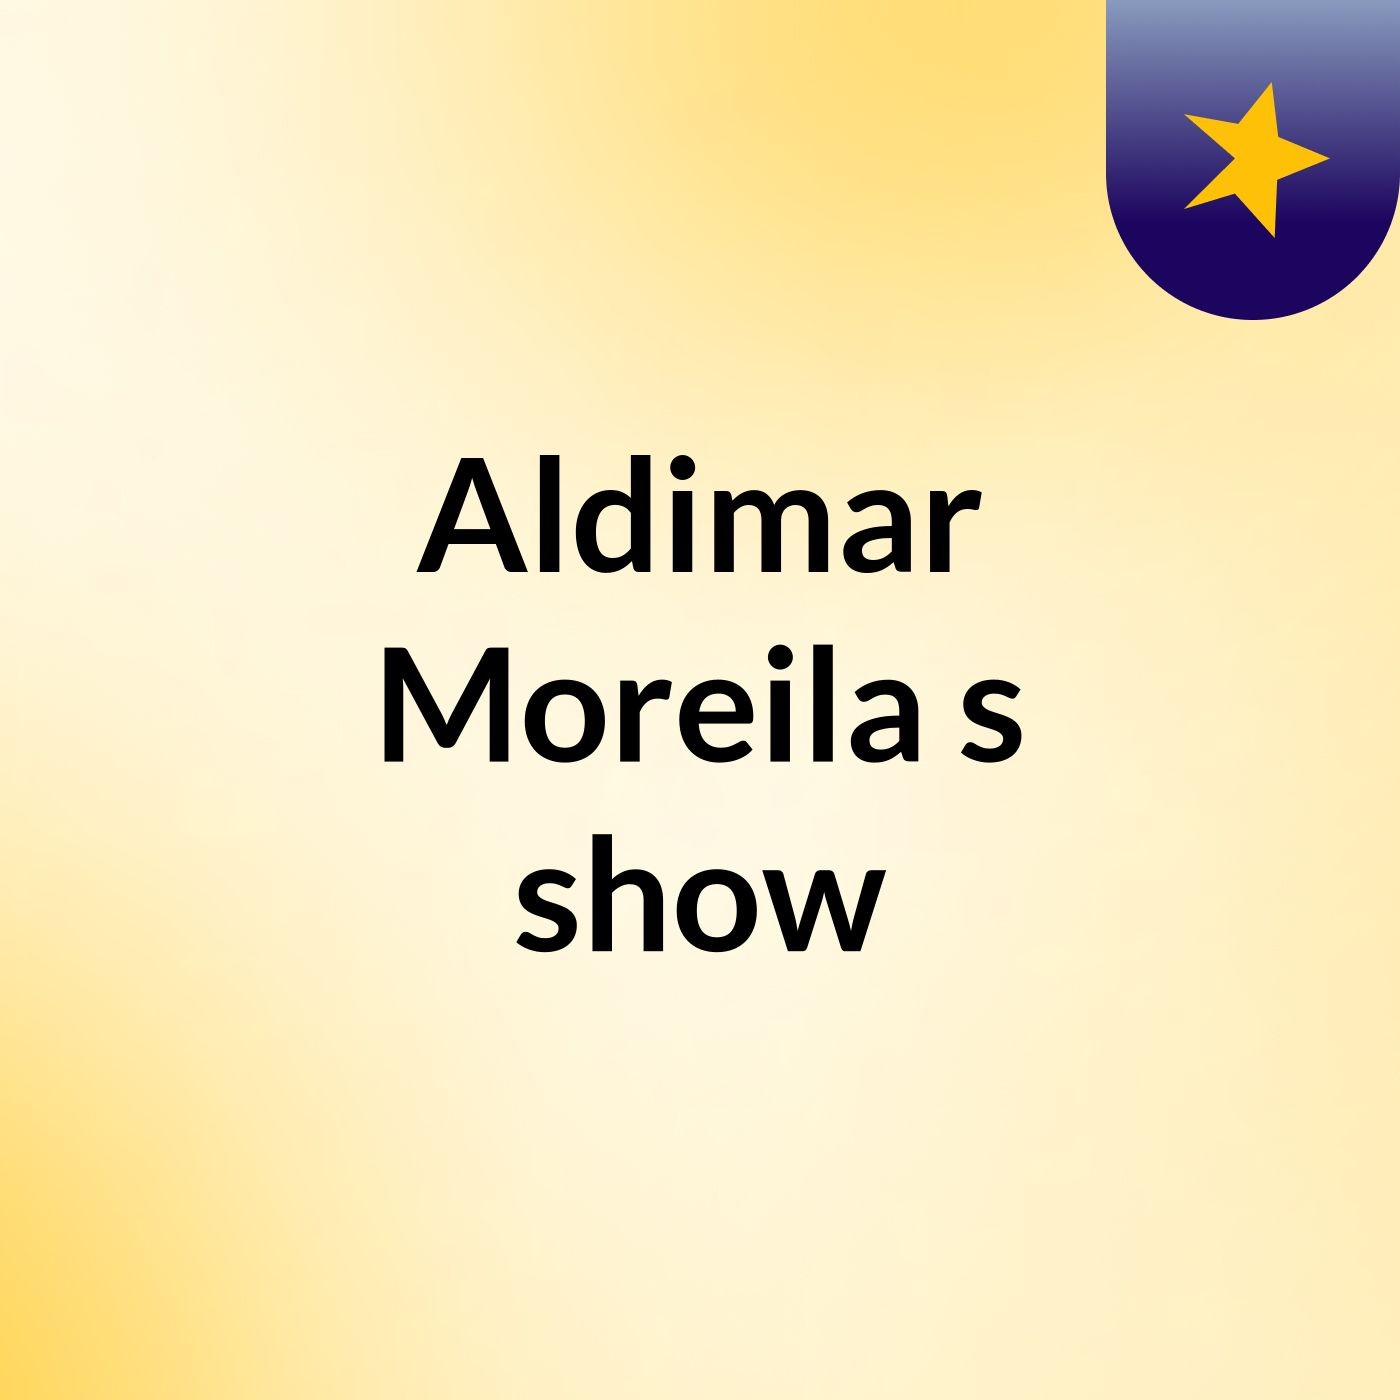 Aldimar Moreila's show